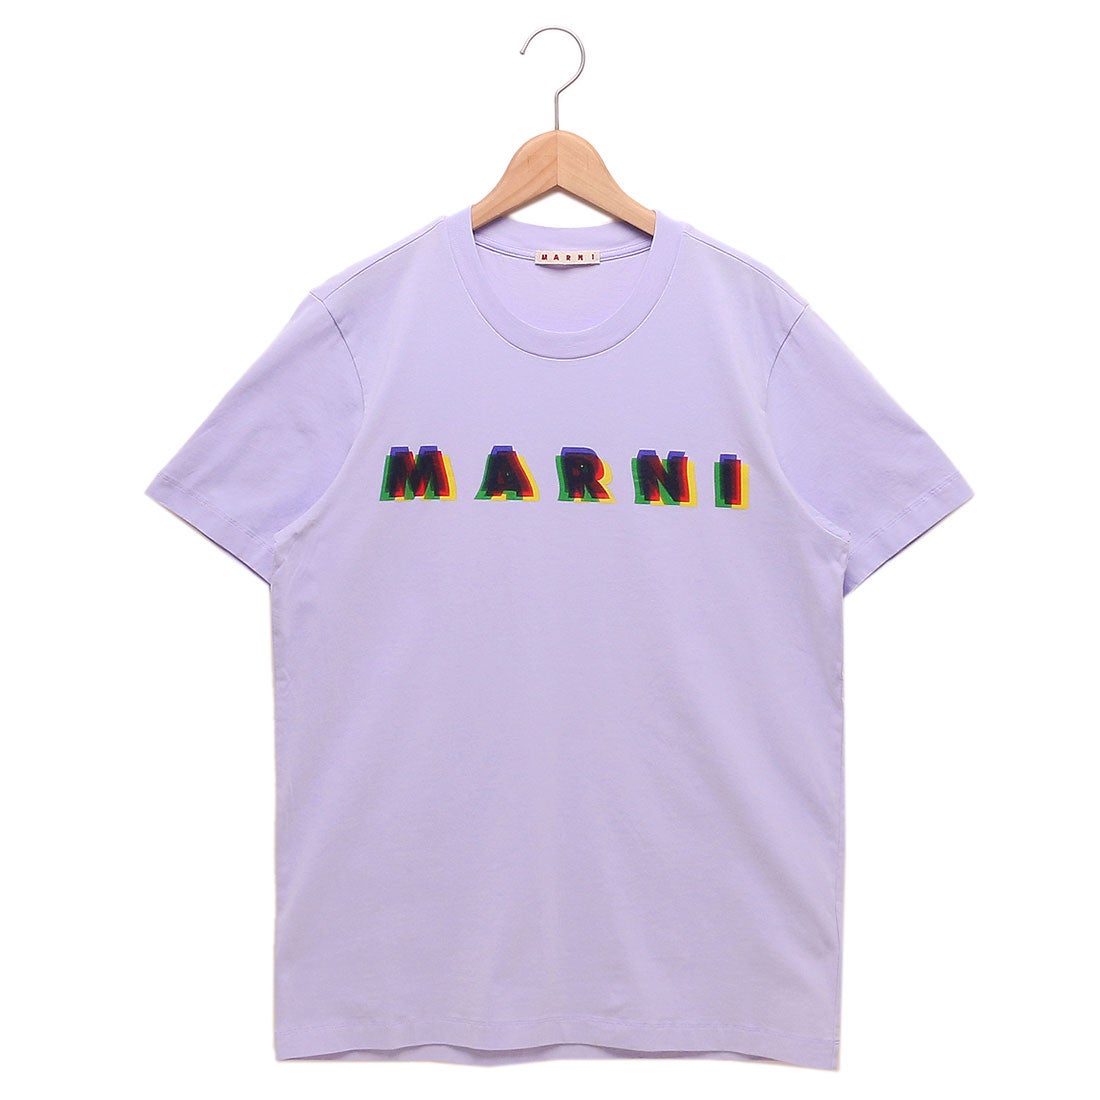 マルニ MARNI Tシャツ 3D MARNIプリント コットンTシャツ 半袖T